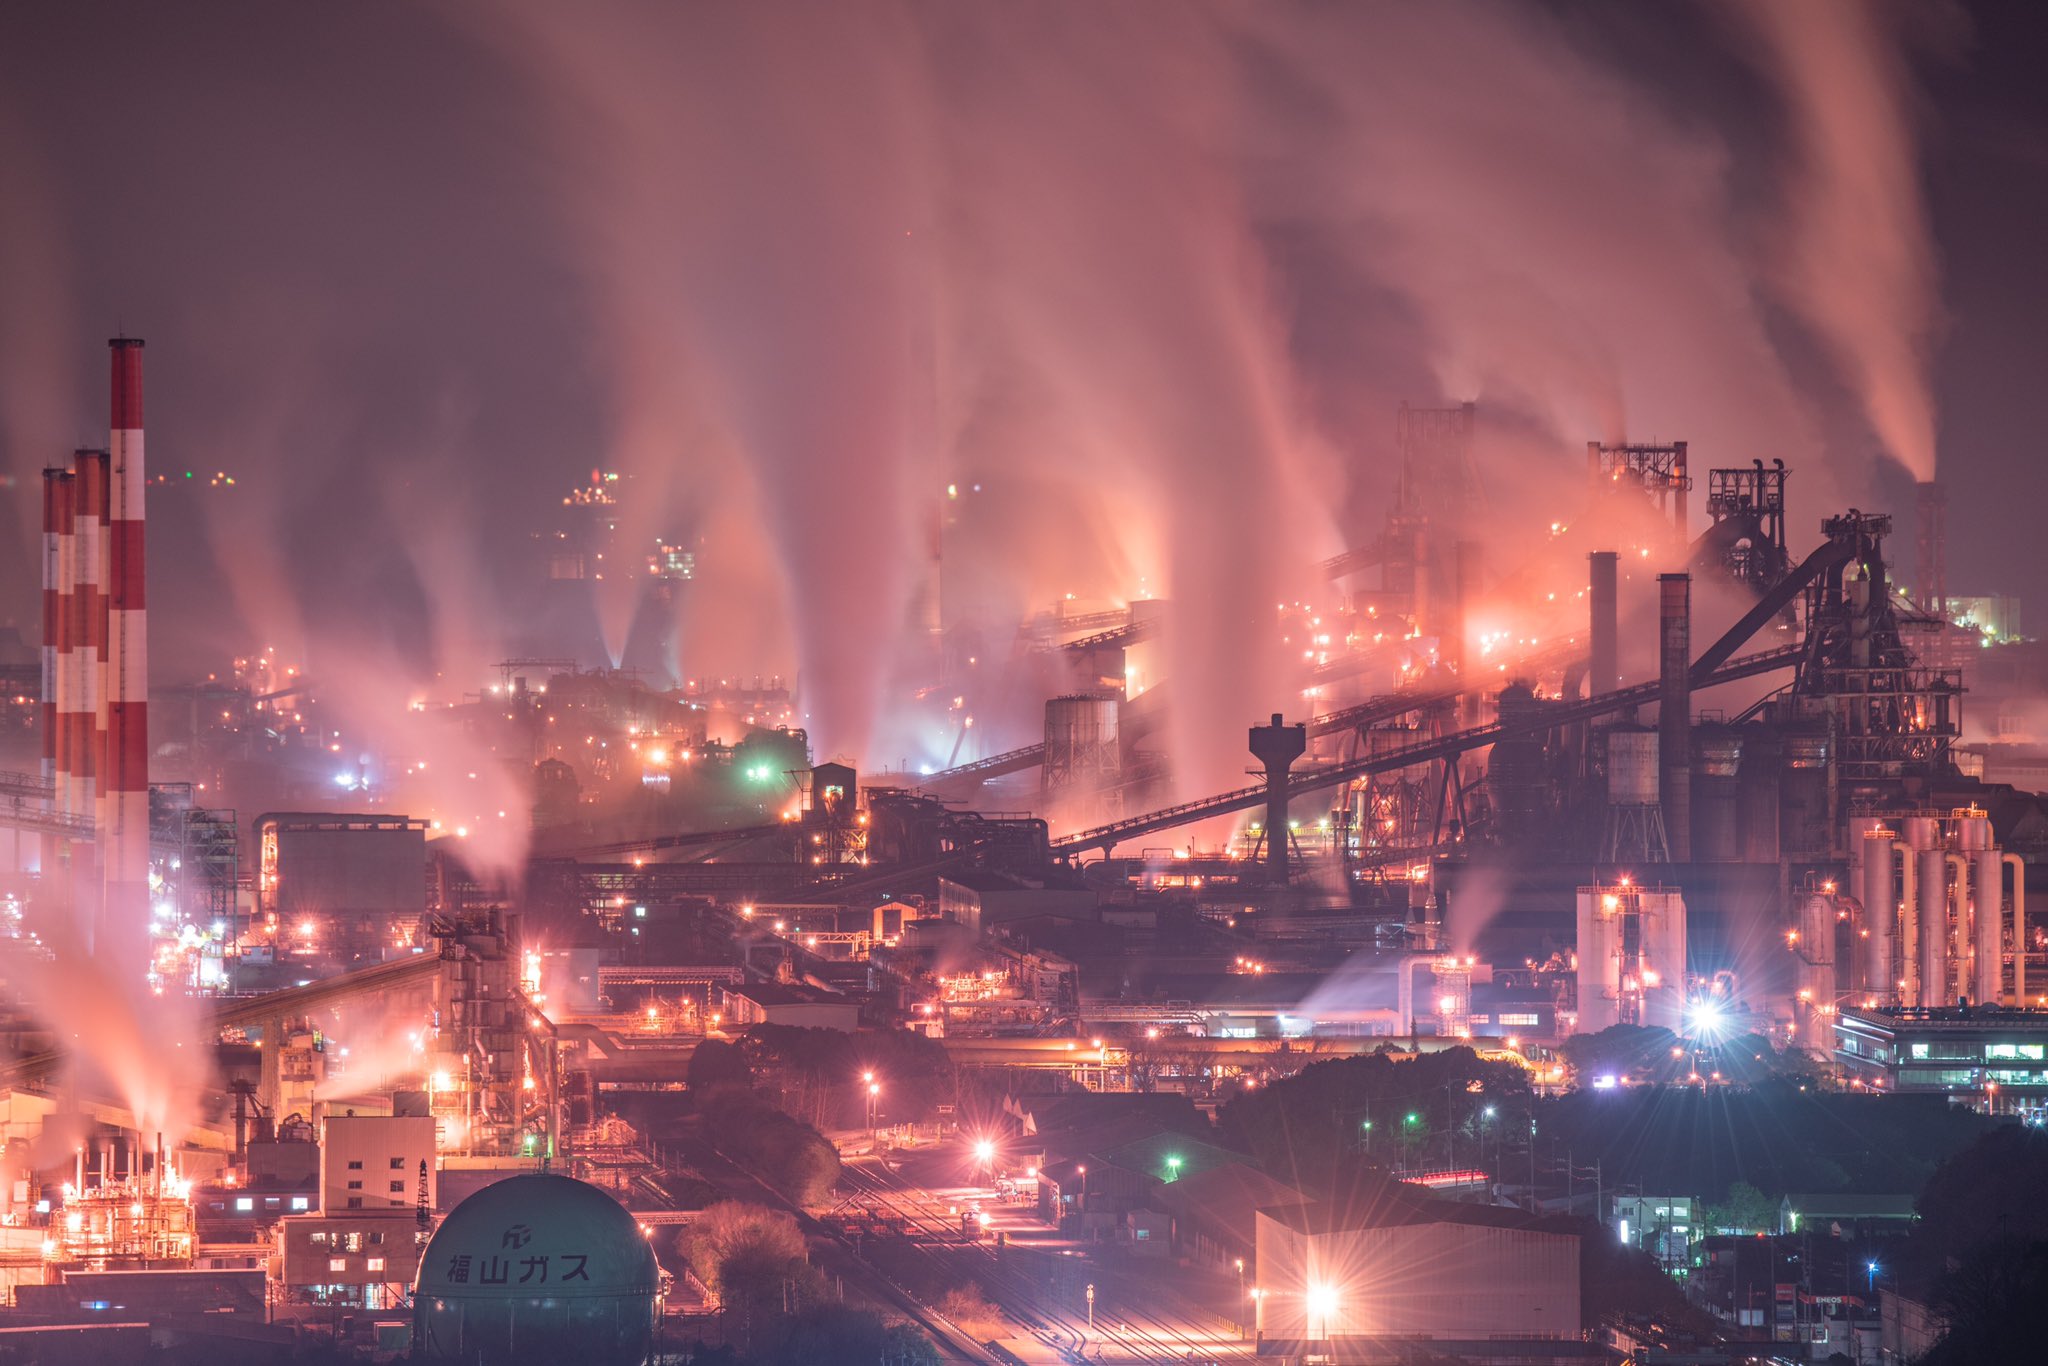 现实版神罗城？摄影家拍摄现实钢铁厂风景酷似米德加尔引热议